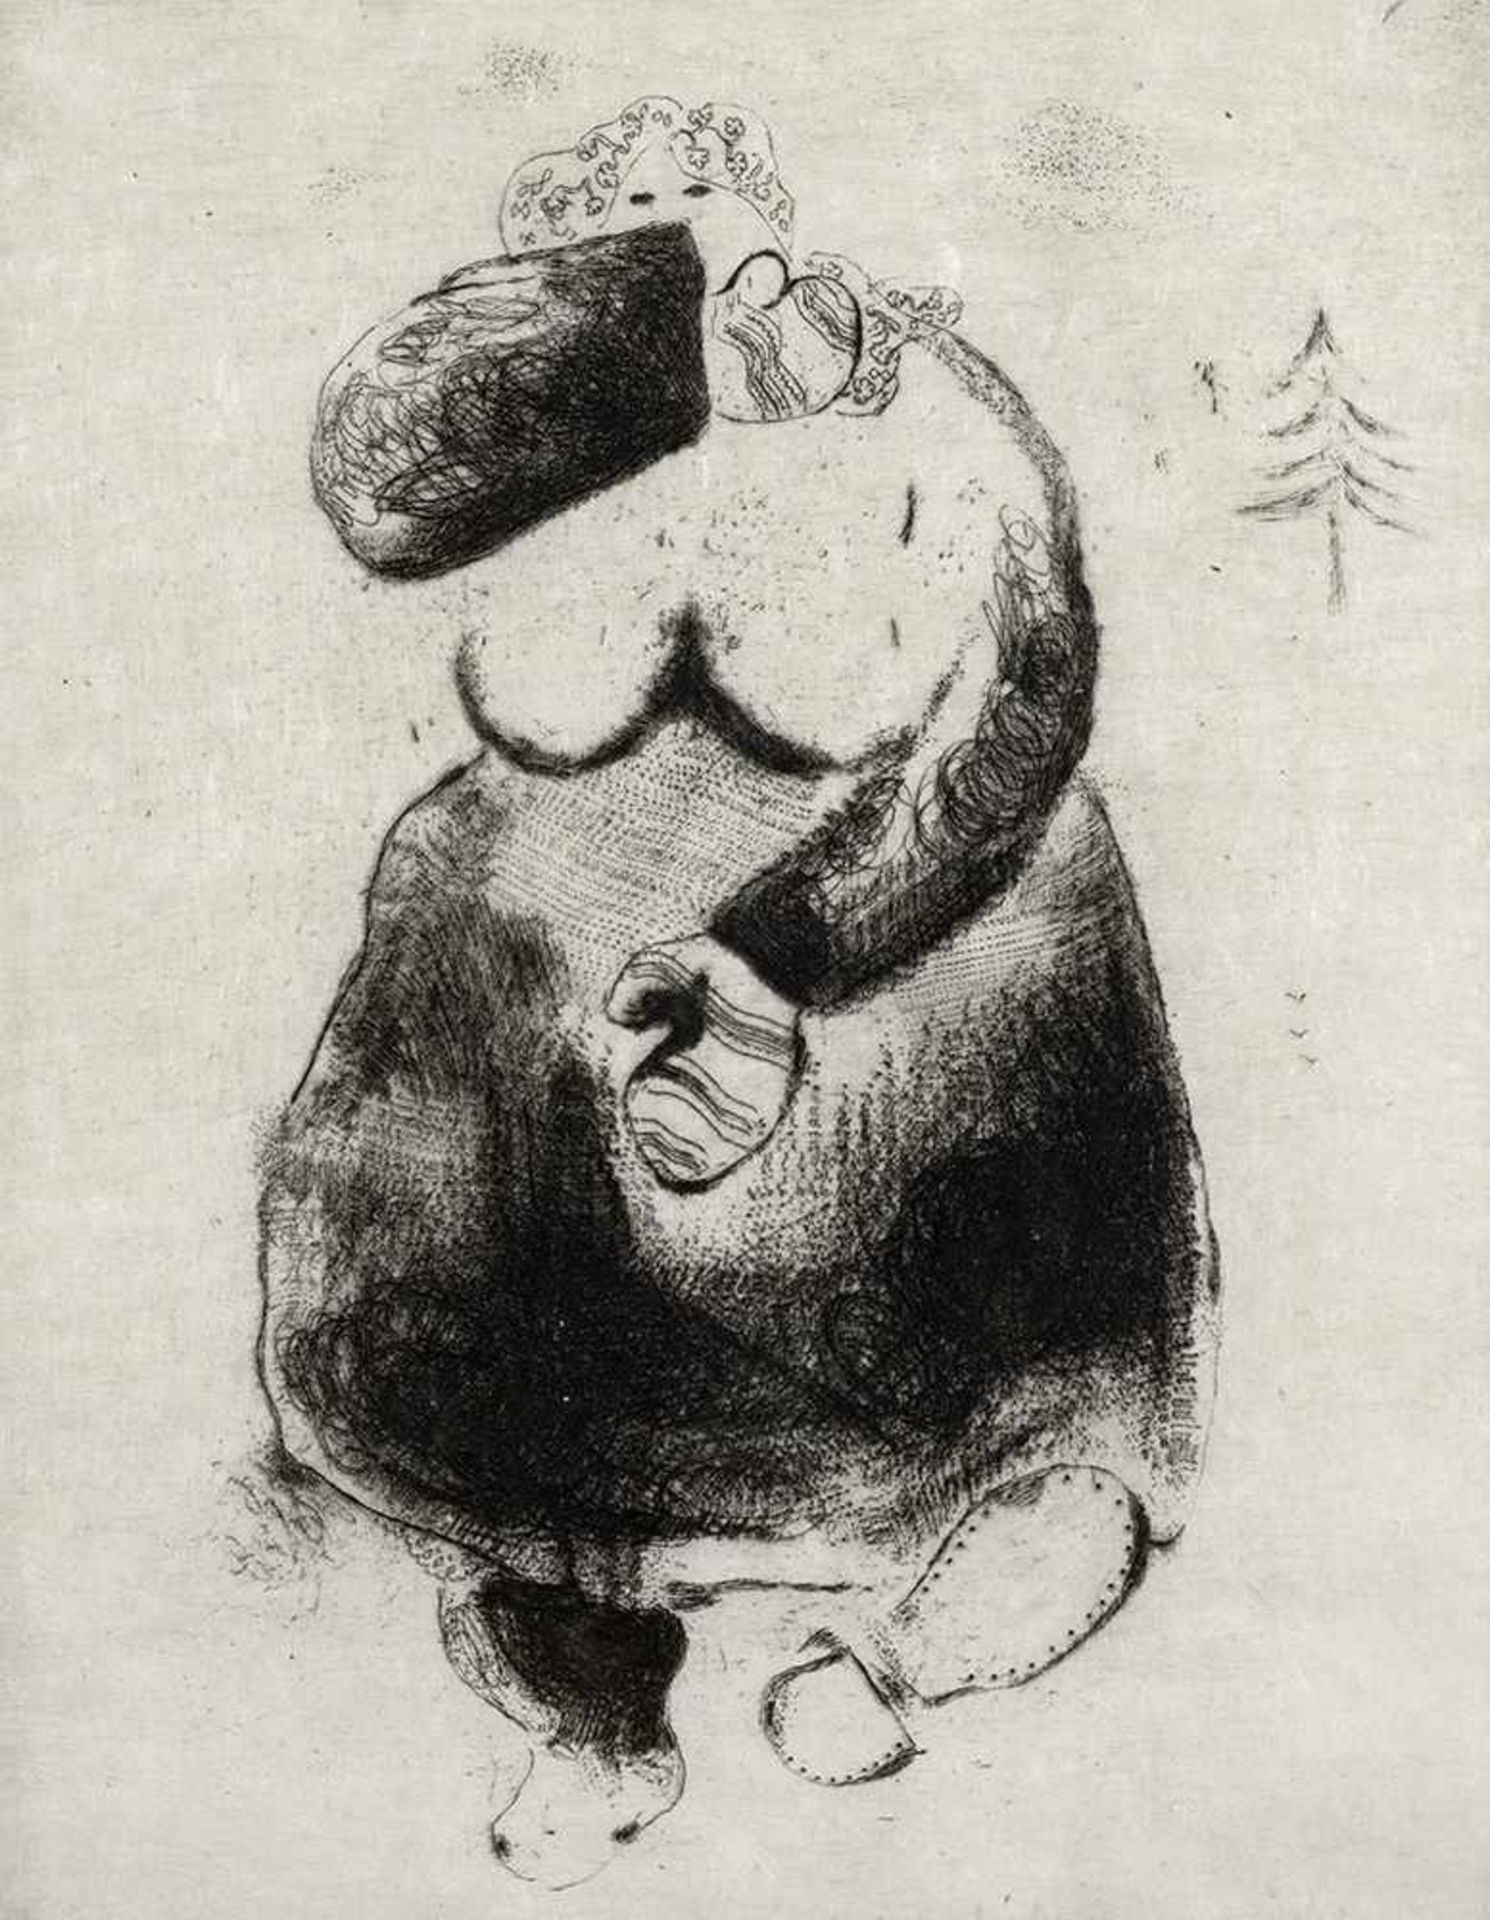 Chagall, MarcWitebsk, 1889 - Vence, 198528 x 21 cm, R.La femme moineau, 1925 - 1927. Radierung auf